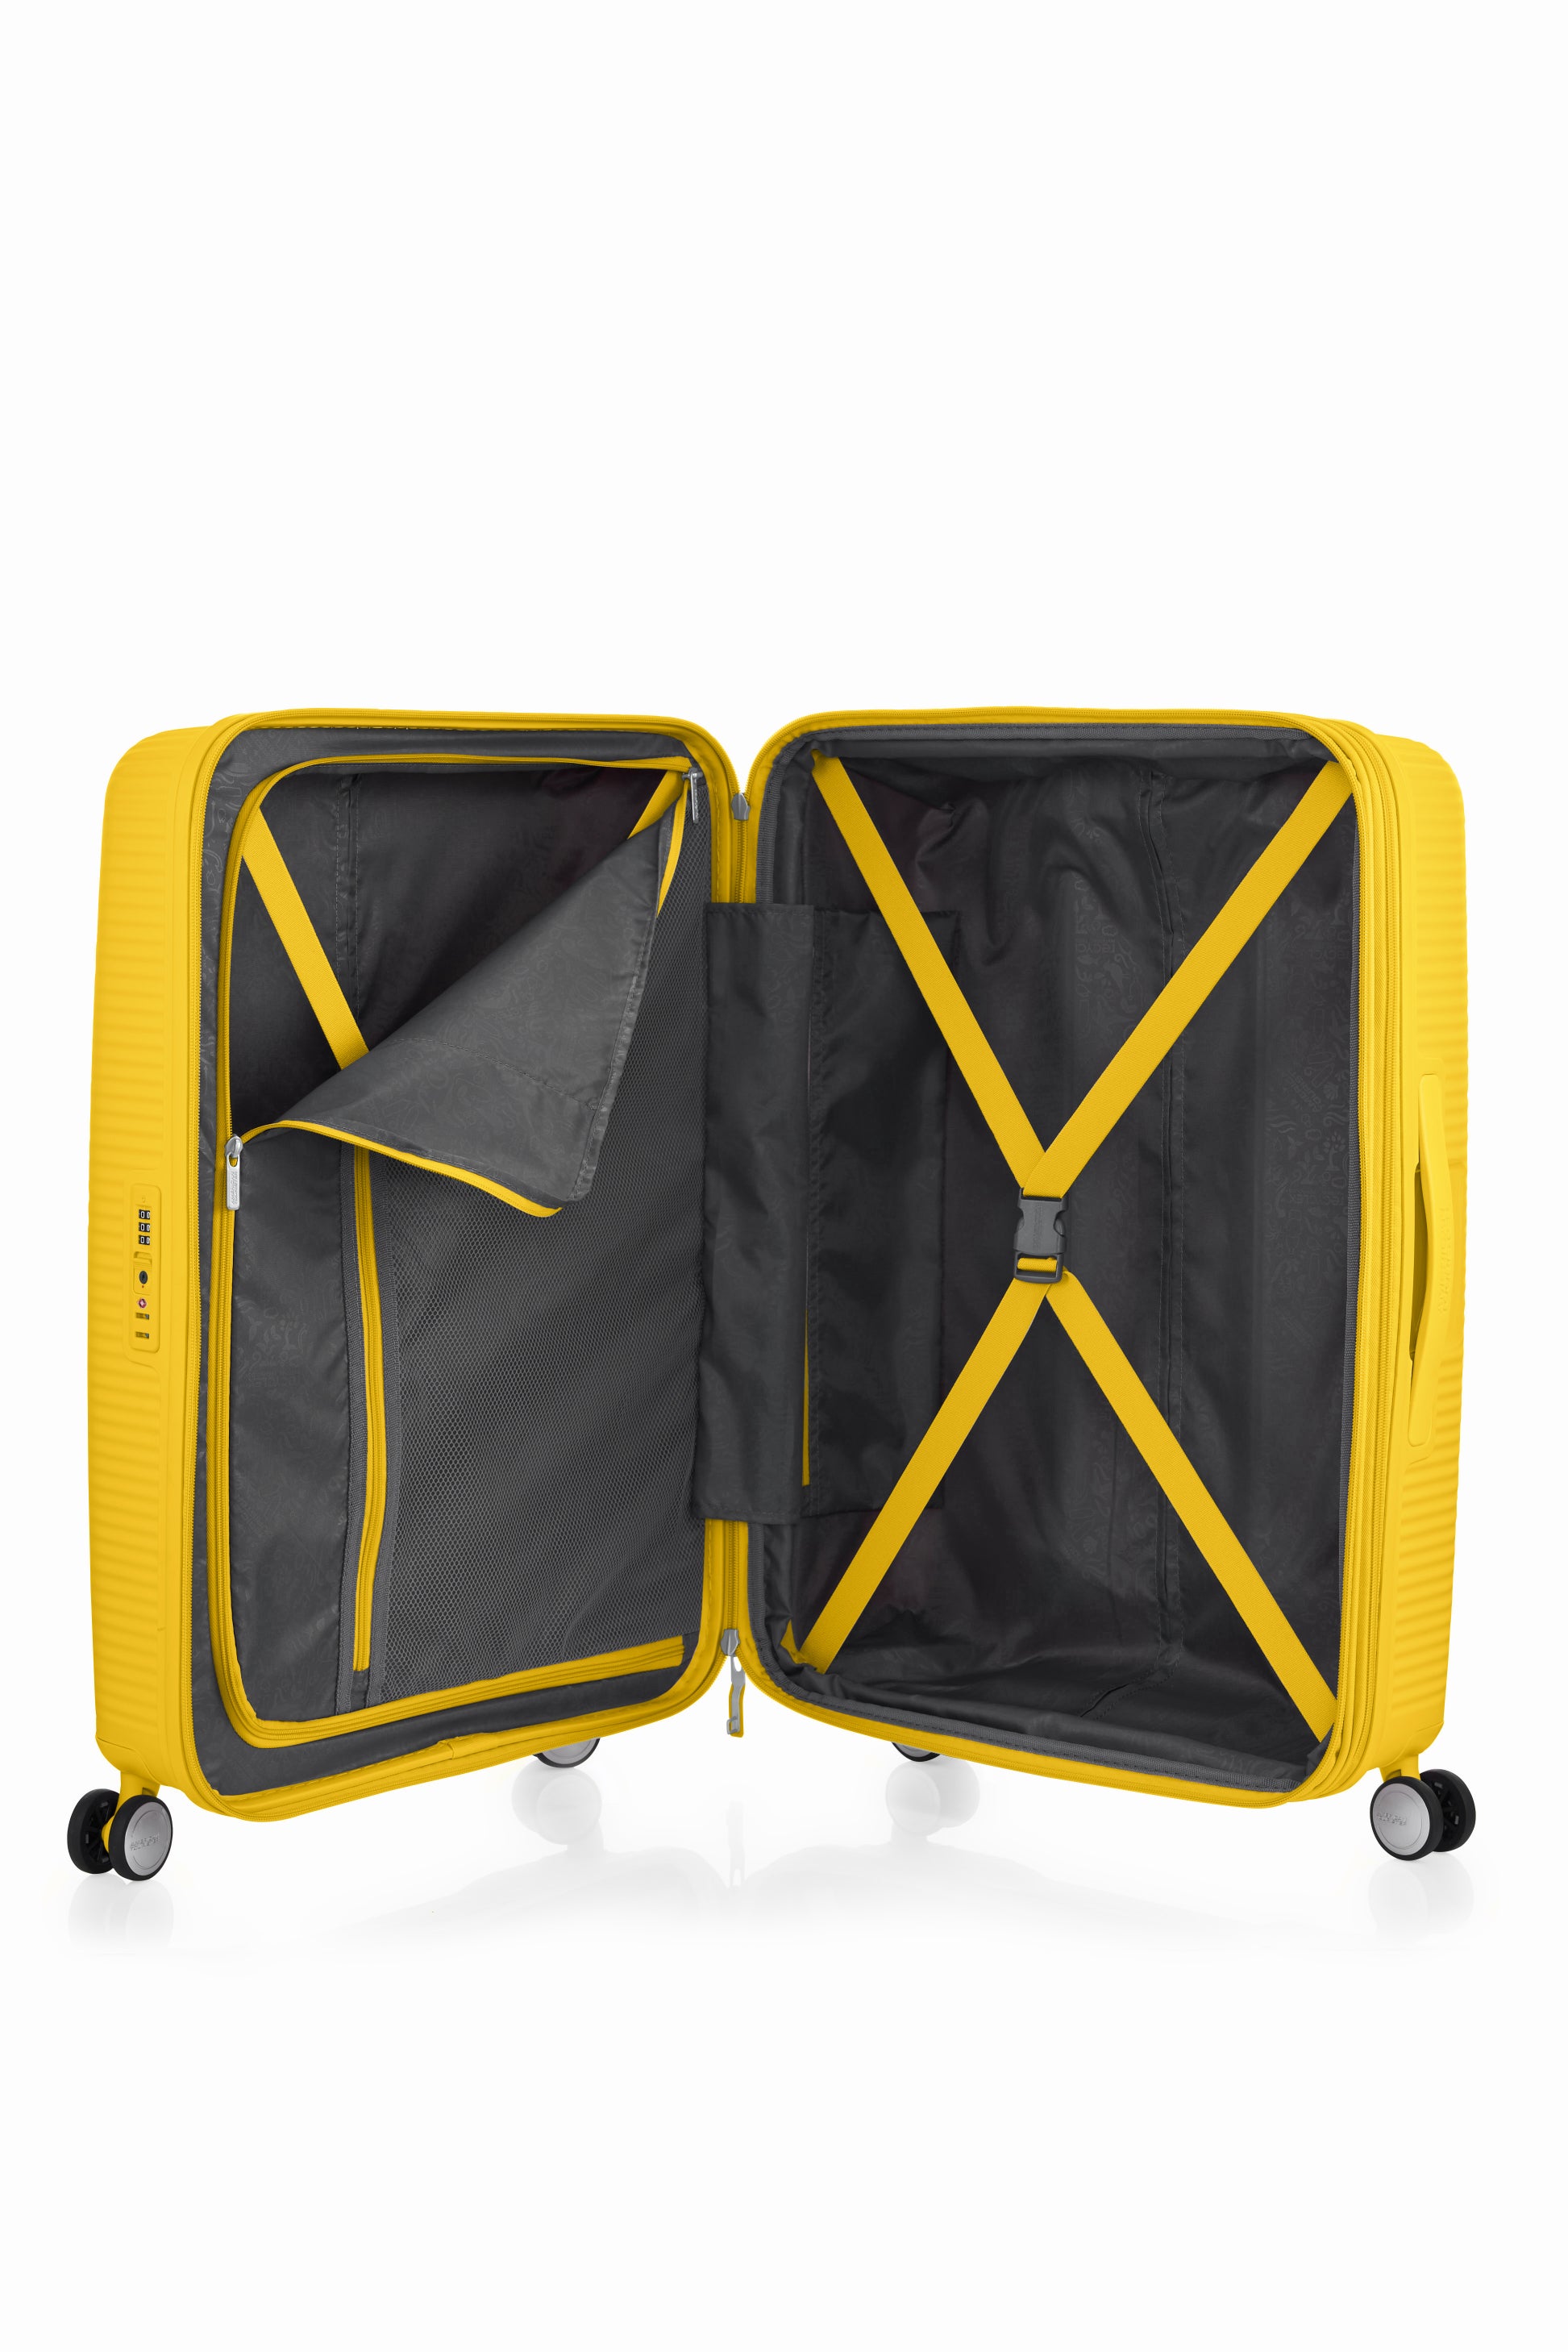 American Tourister - Curio 2.0 69cm Medium Suitcase - Golden Yellow-10